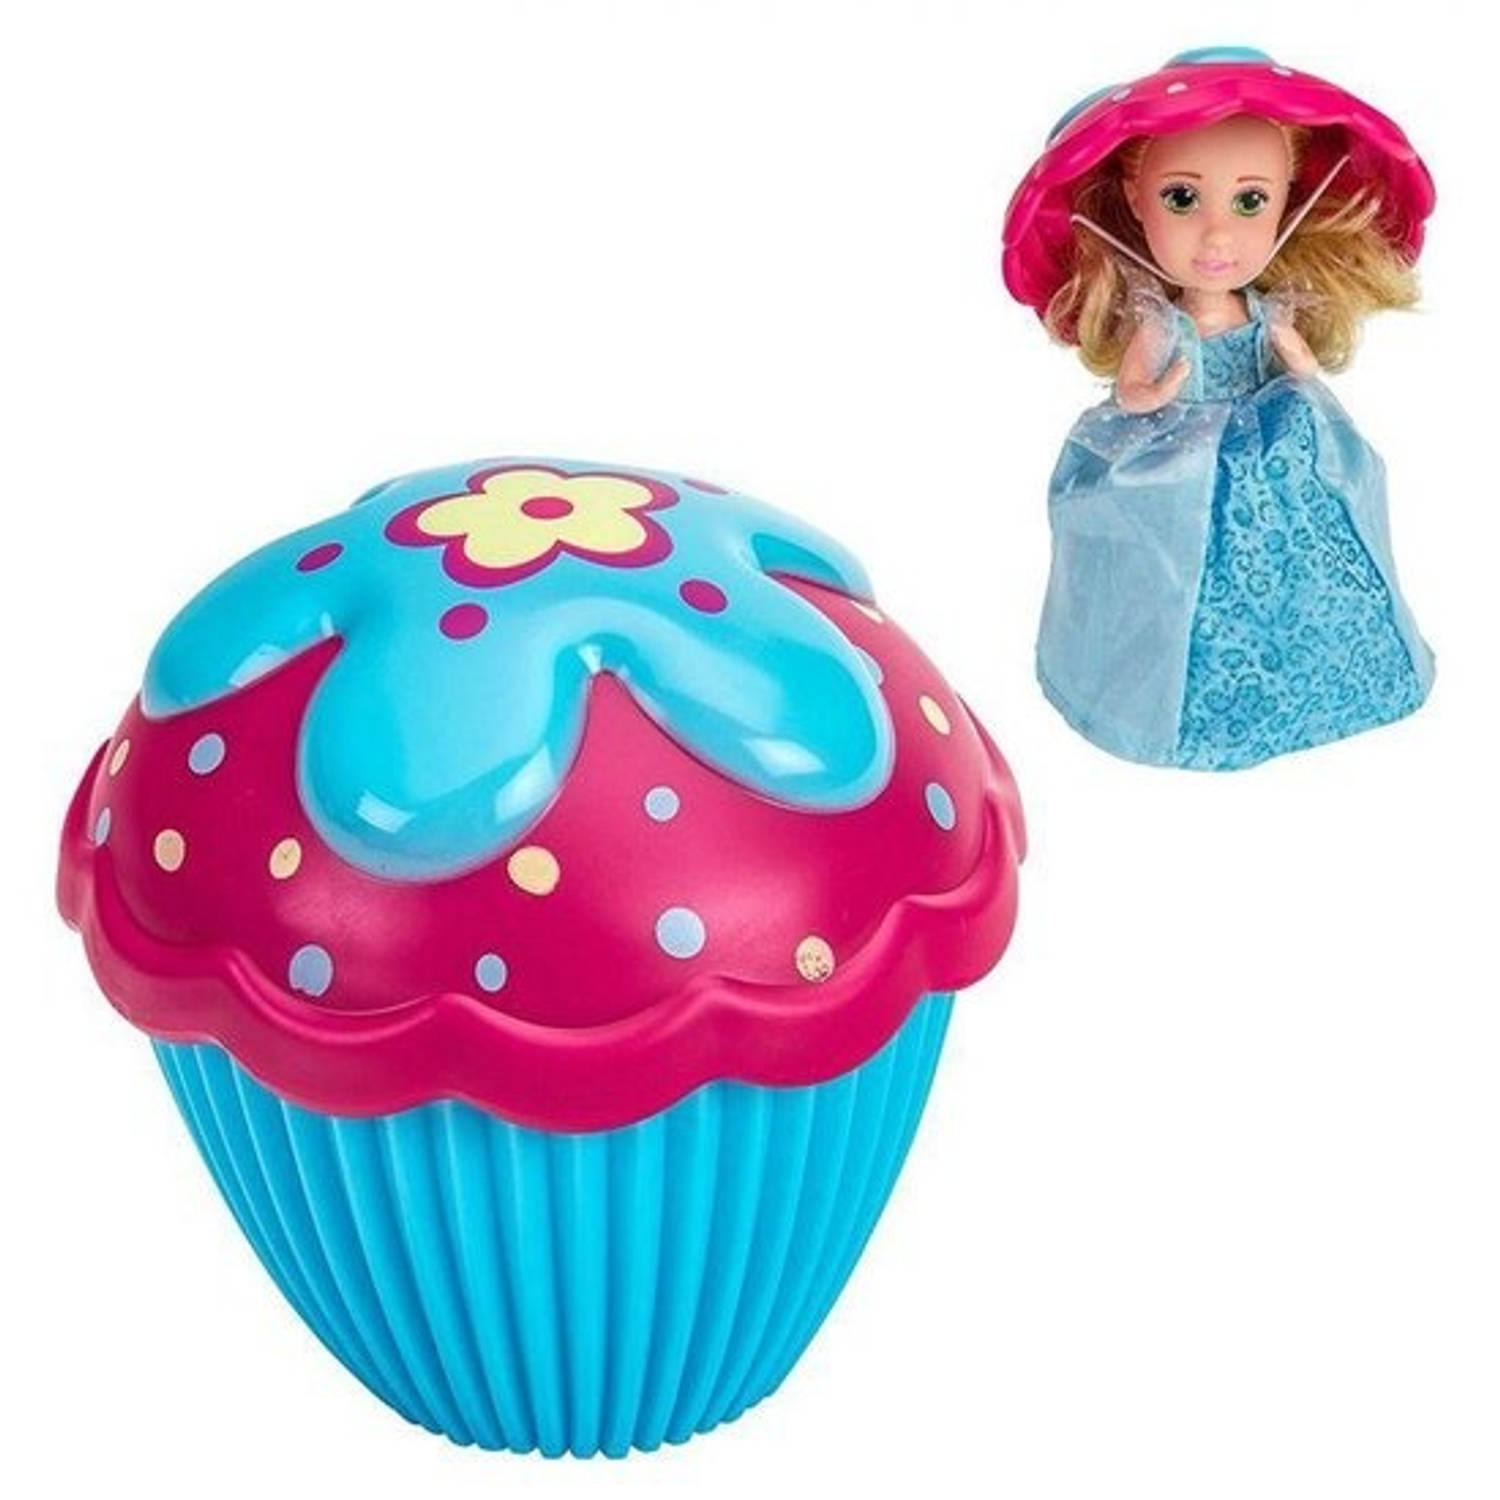 Boti Cupcake Surprise Doll - Verander je cupcake in een heerlijk geurend Prinsessen Pop! Blauw/Roze